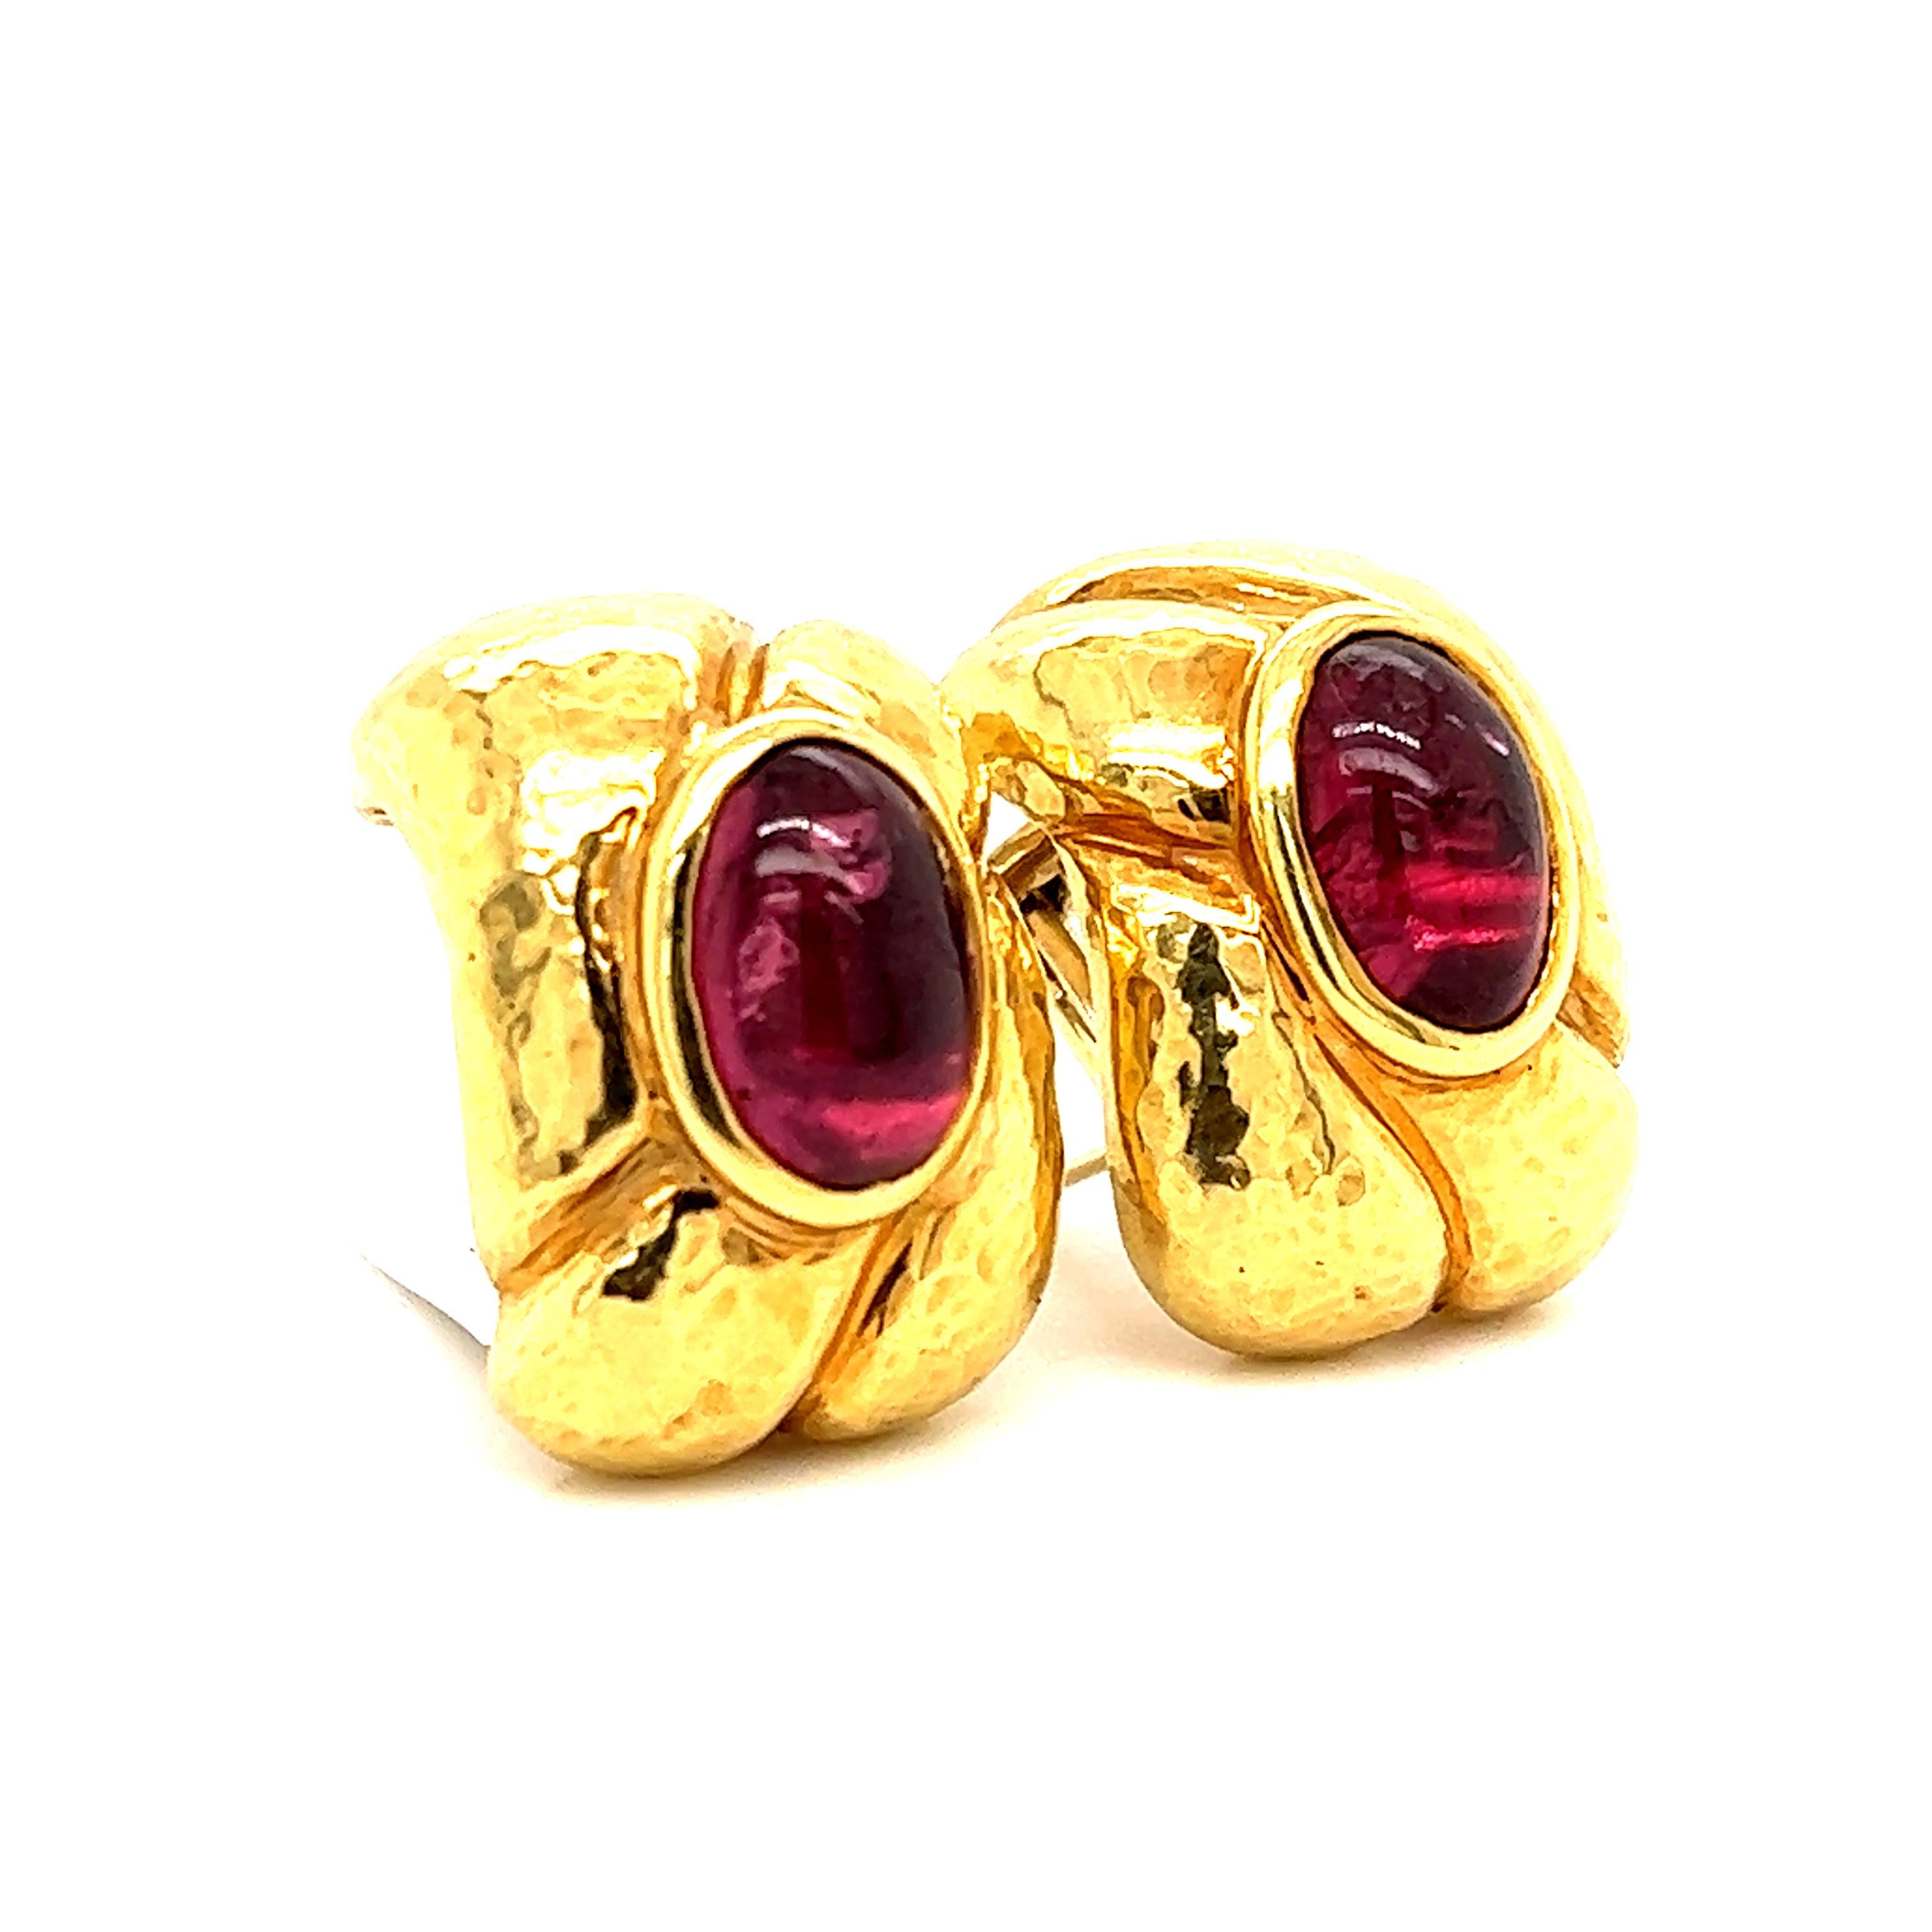 Dieses Paar Ohrringe aus 18-karätigem Gelbgold im Retro-Stil hat eine große Anziehungskraft. Das Paar wird von zwei rosafarbenen Turmalinen im Cabochon-Schliff gekrönt, die sich mit ihrem satten Rosaton perfekt vom Gelbgold abheben. Die Edelsteine